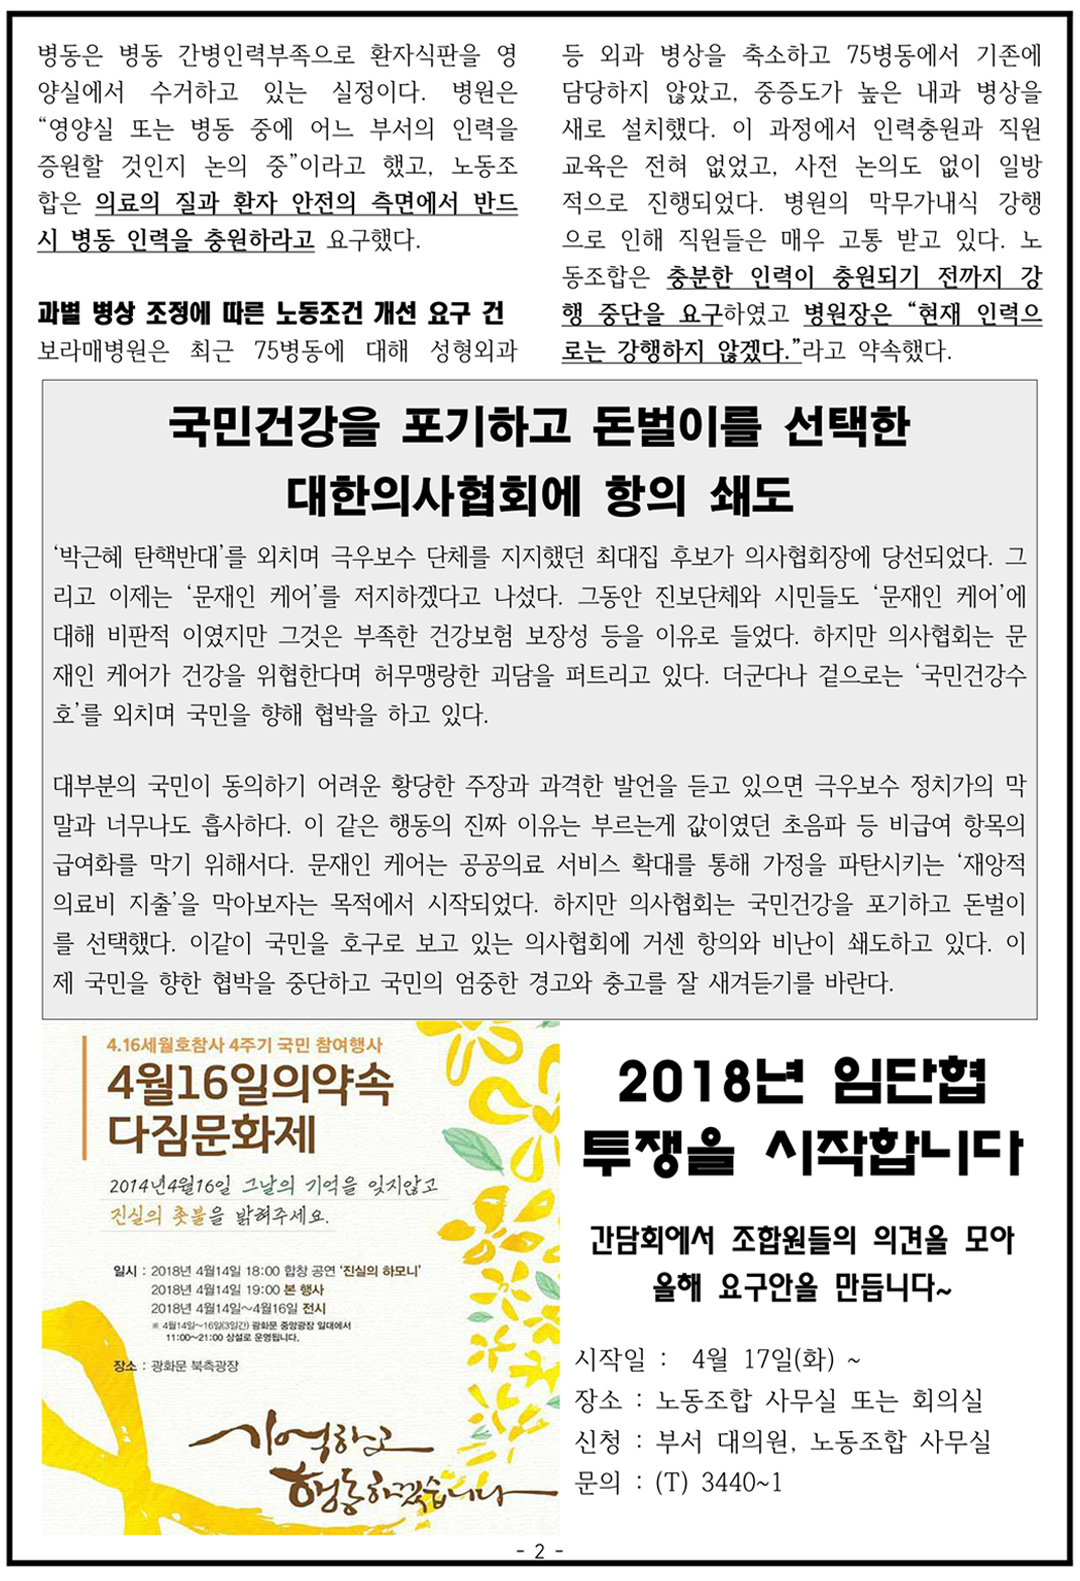 2018 서울대병원분회_9호-2.png